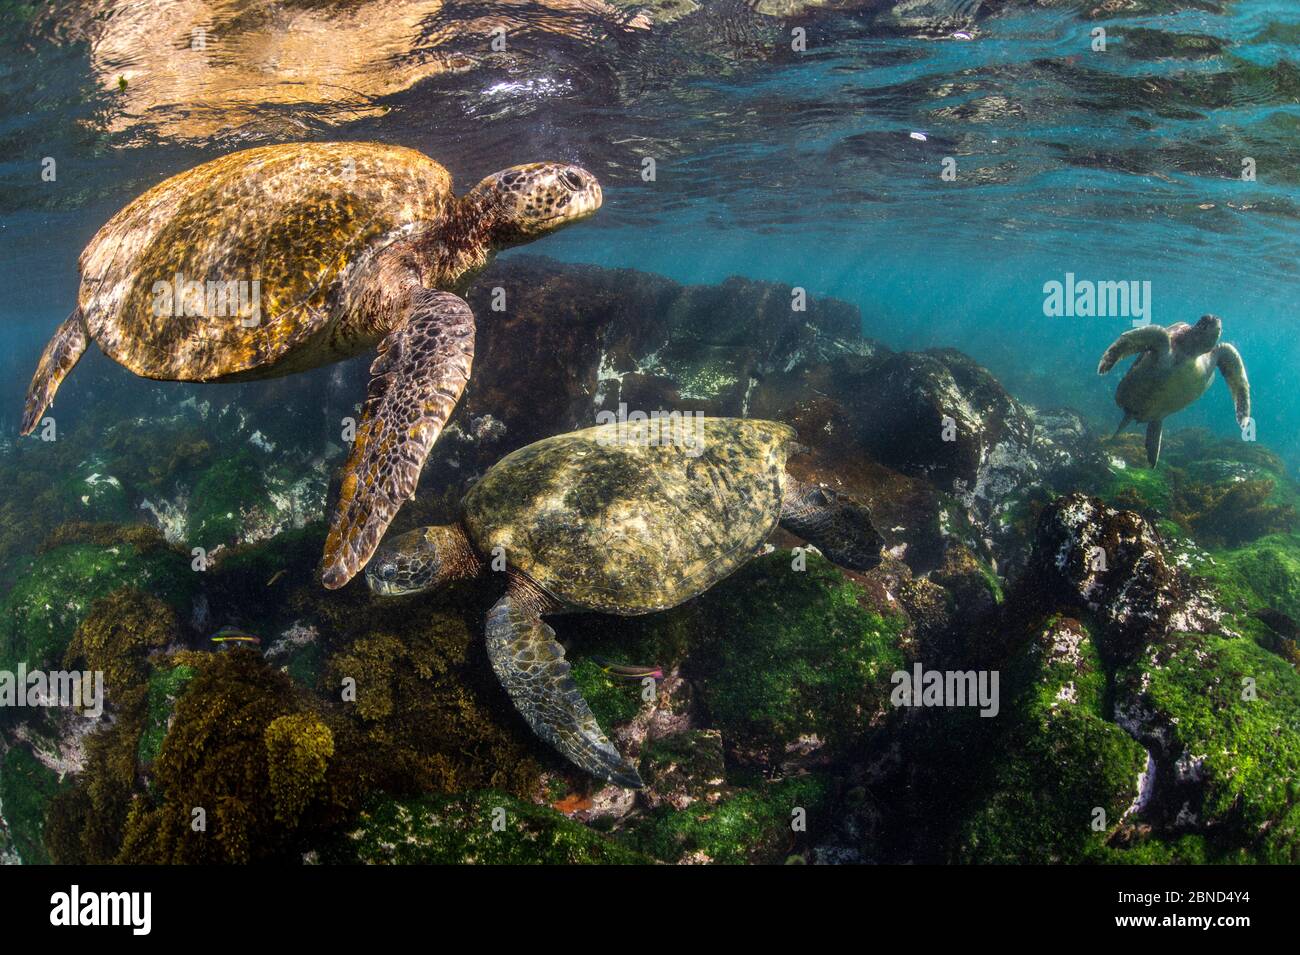 Tre tartarughe verdi Galapagos (Chelonia mydas agassizii) che si nutrono di alghe che crescono su rocce laviche in acque soleggiate e poco profonde. Isola Floreana, Galapagos i Foto Stock